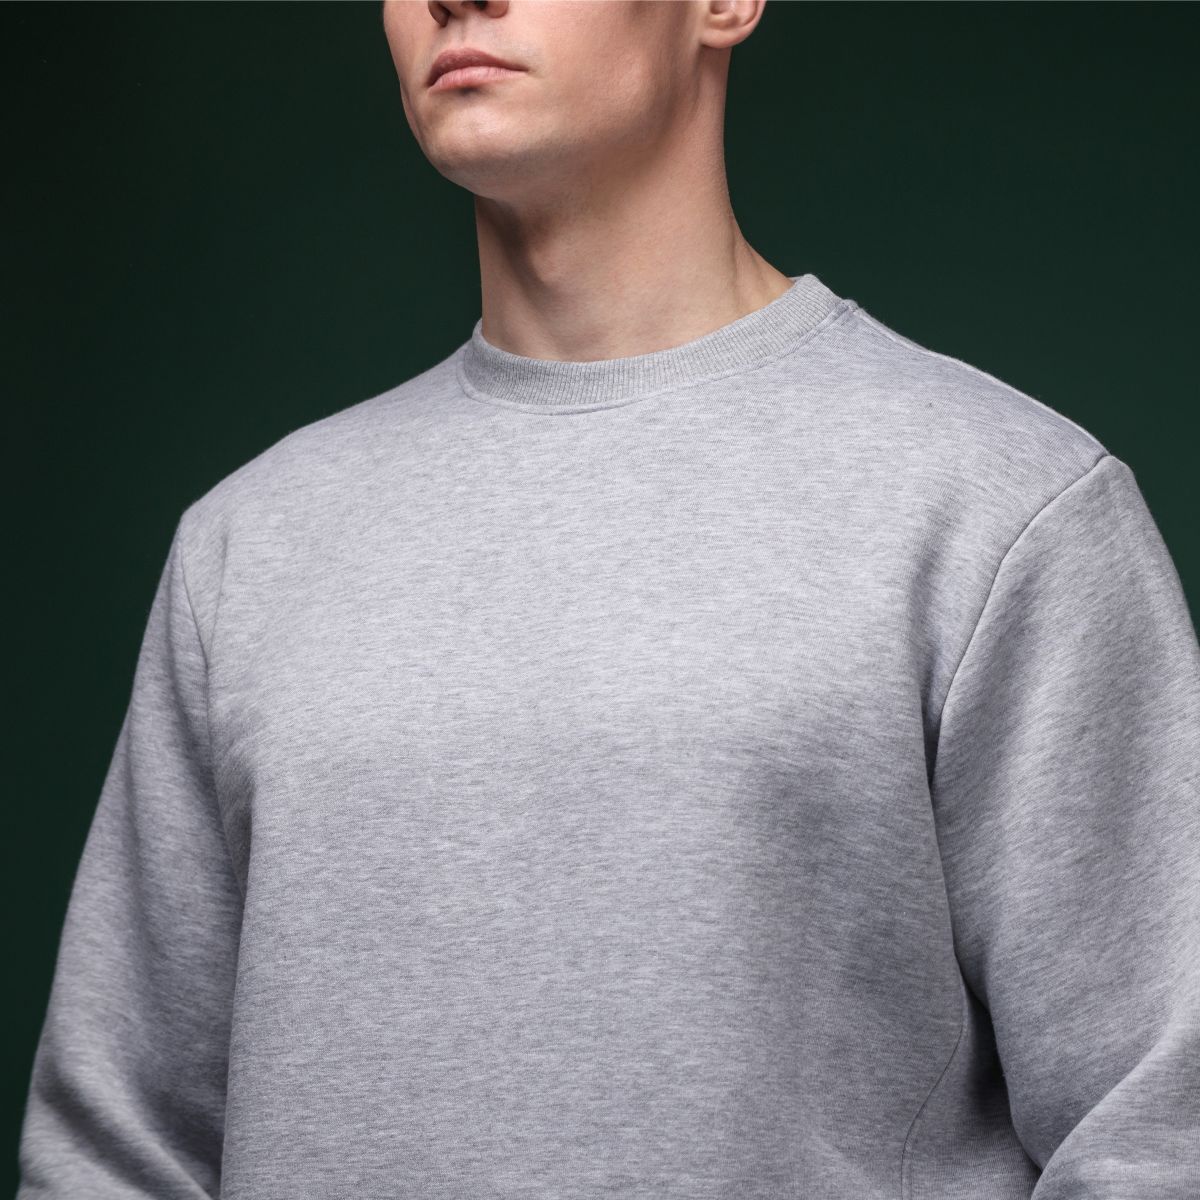 Світшот Base Soft Sweatshirt. Вільний стиль. Колір Сірий/Gray. Розмір S 4